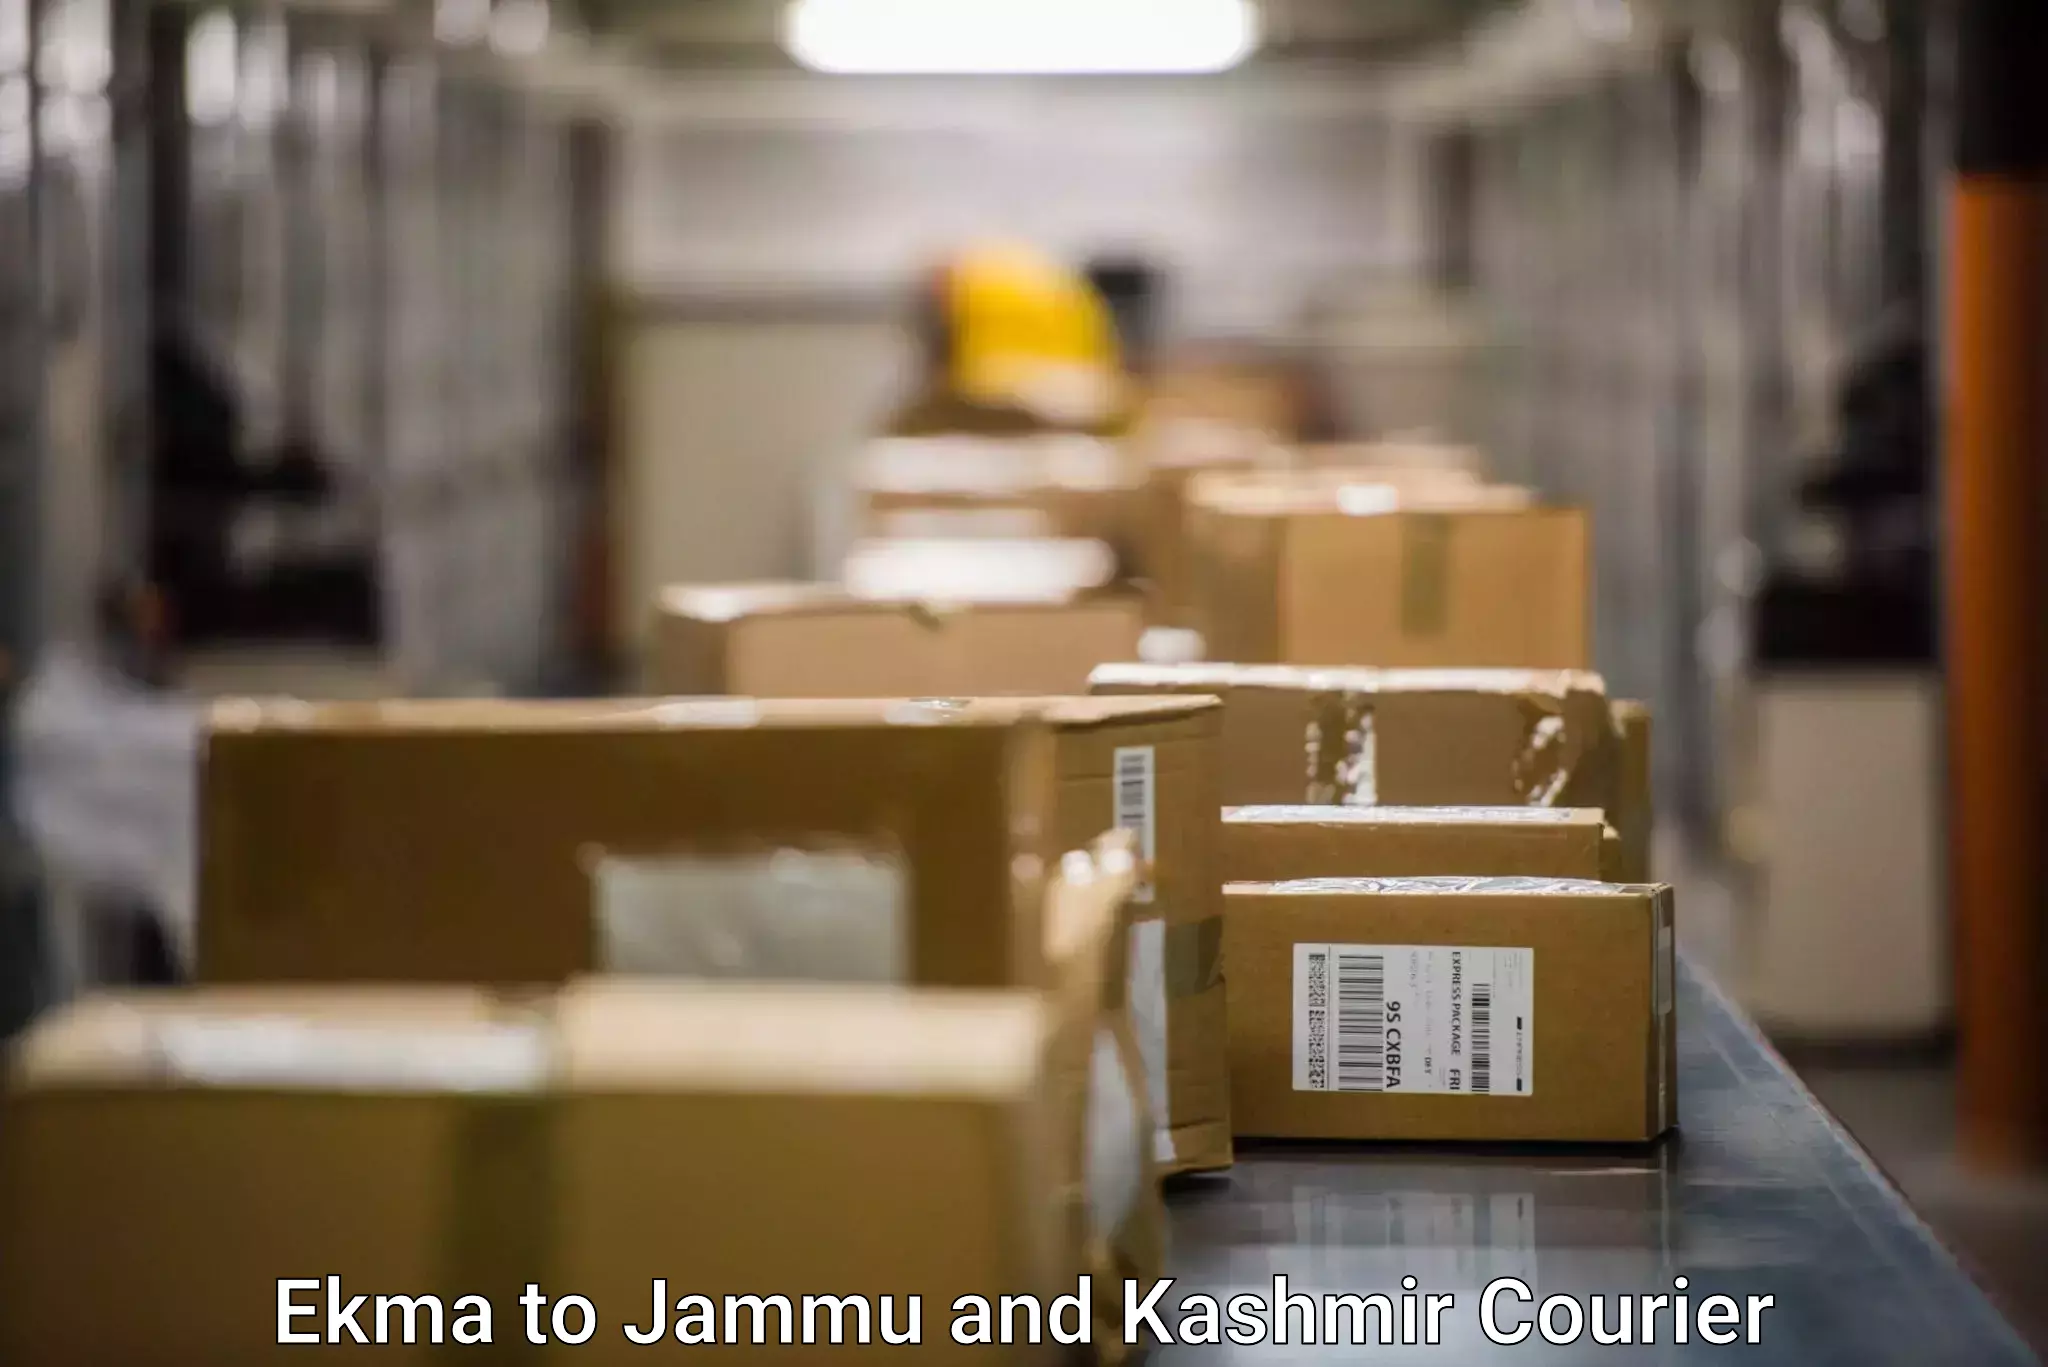 Doorstep delivery service Ekma to Jammu